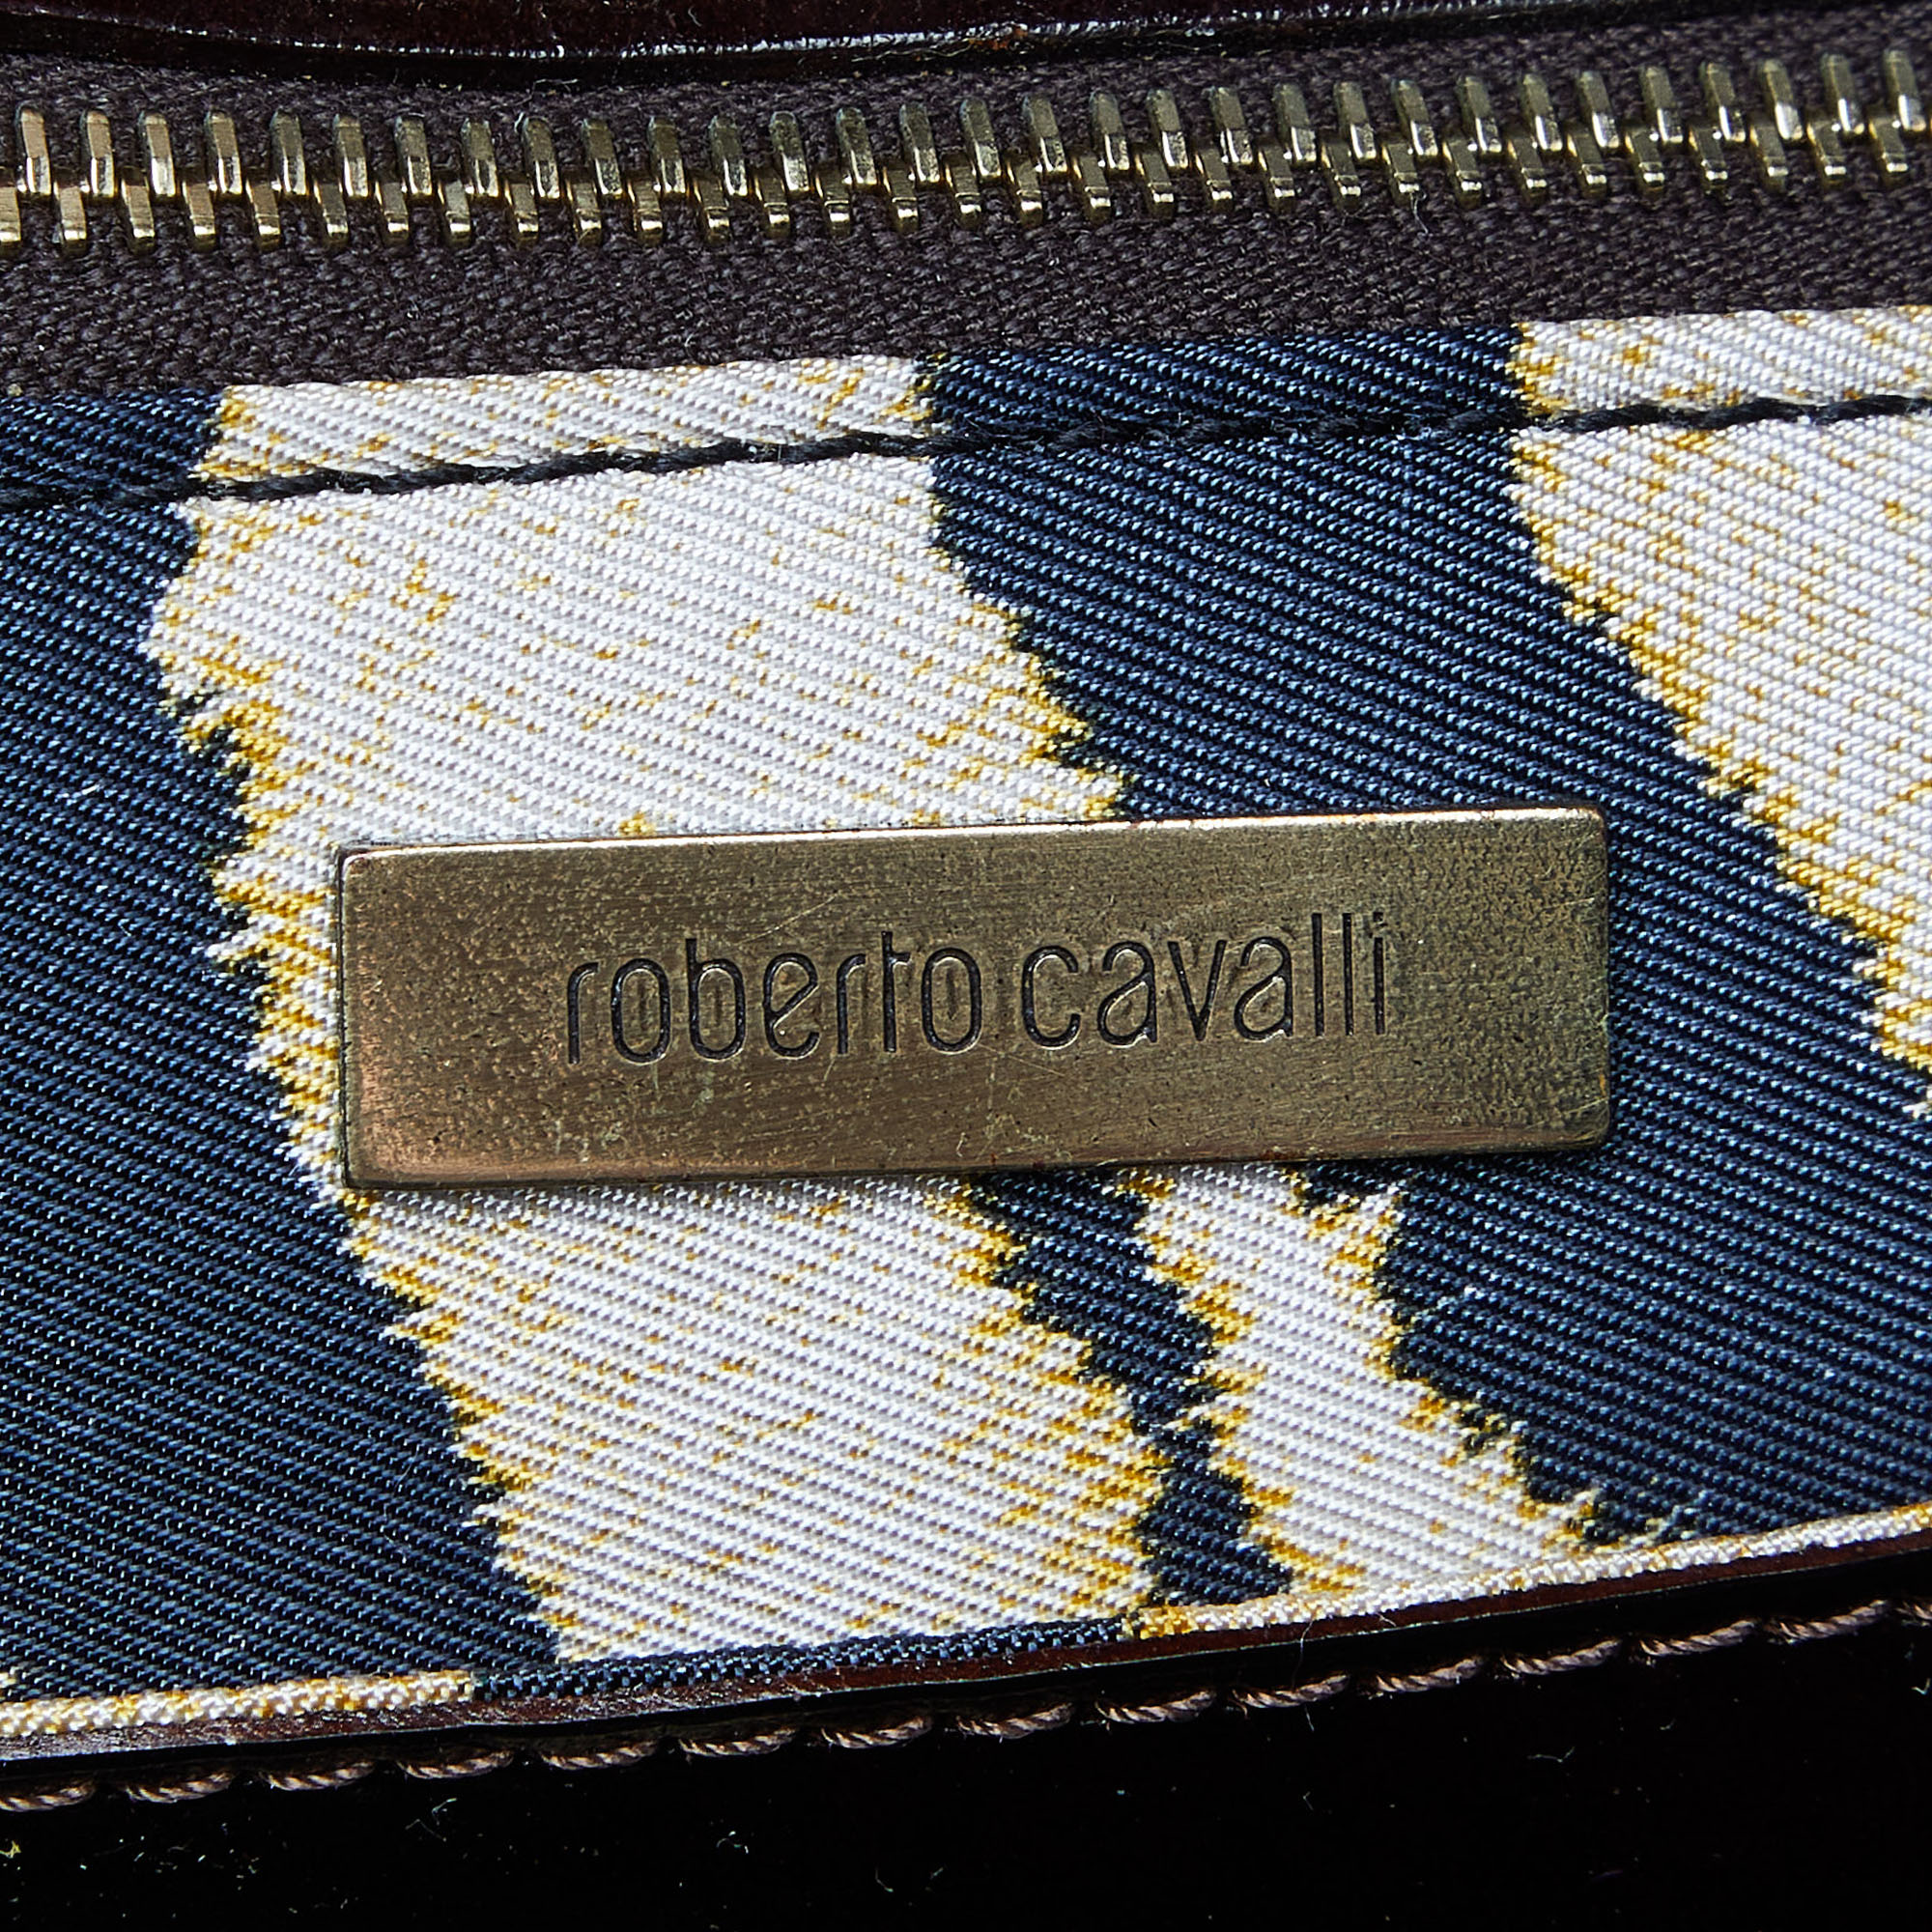 Roberto Cavalli Multicolor Leopard Print Canvas And Leather Shopper Tote